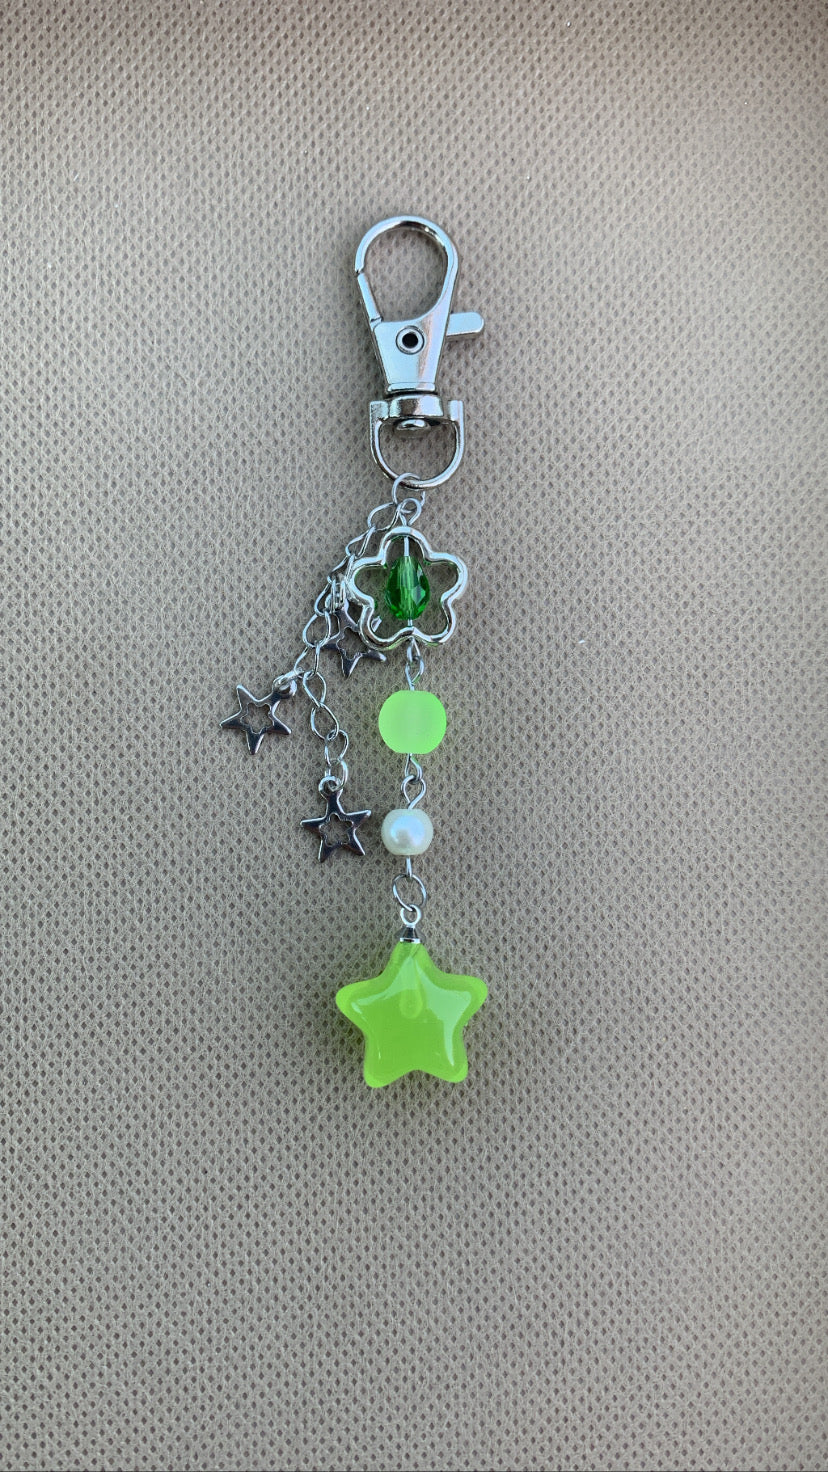 Jelly Star Keychain